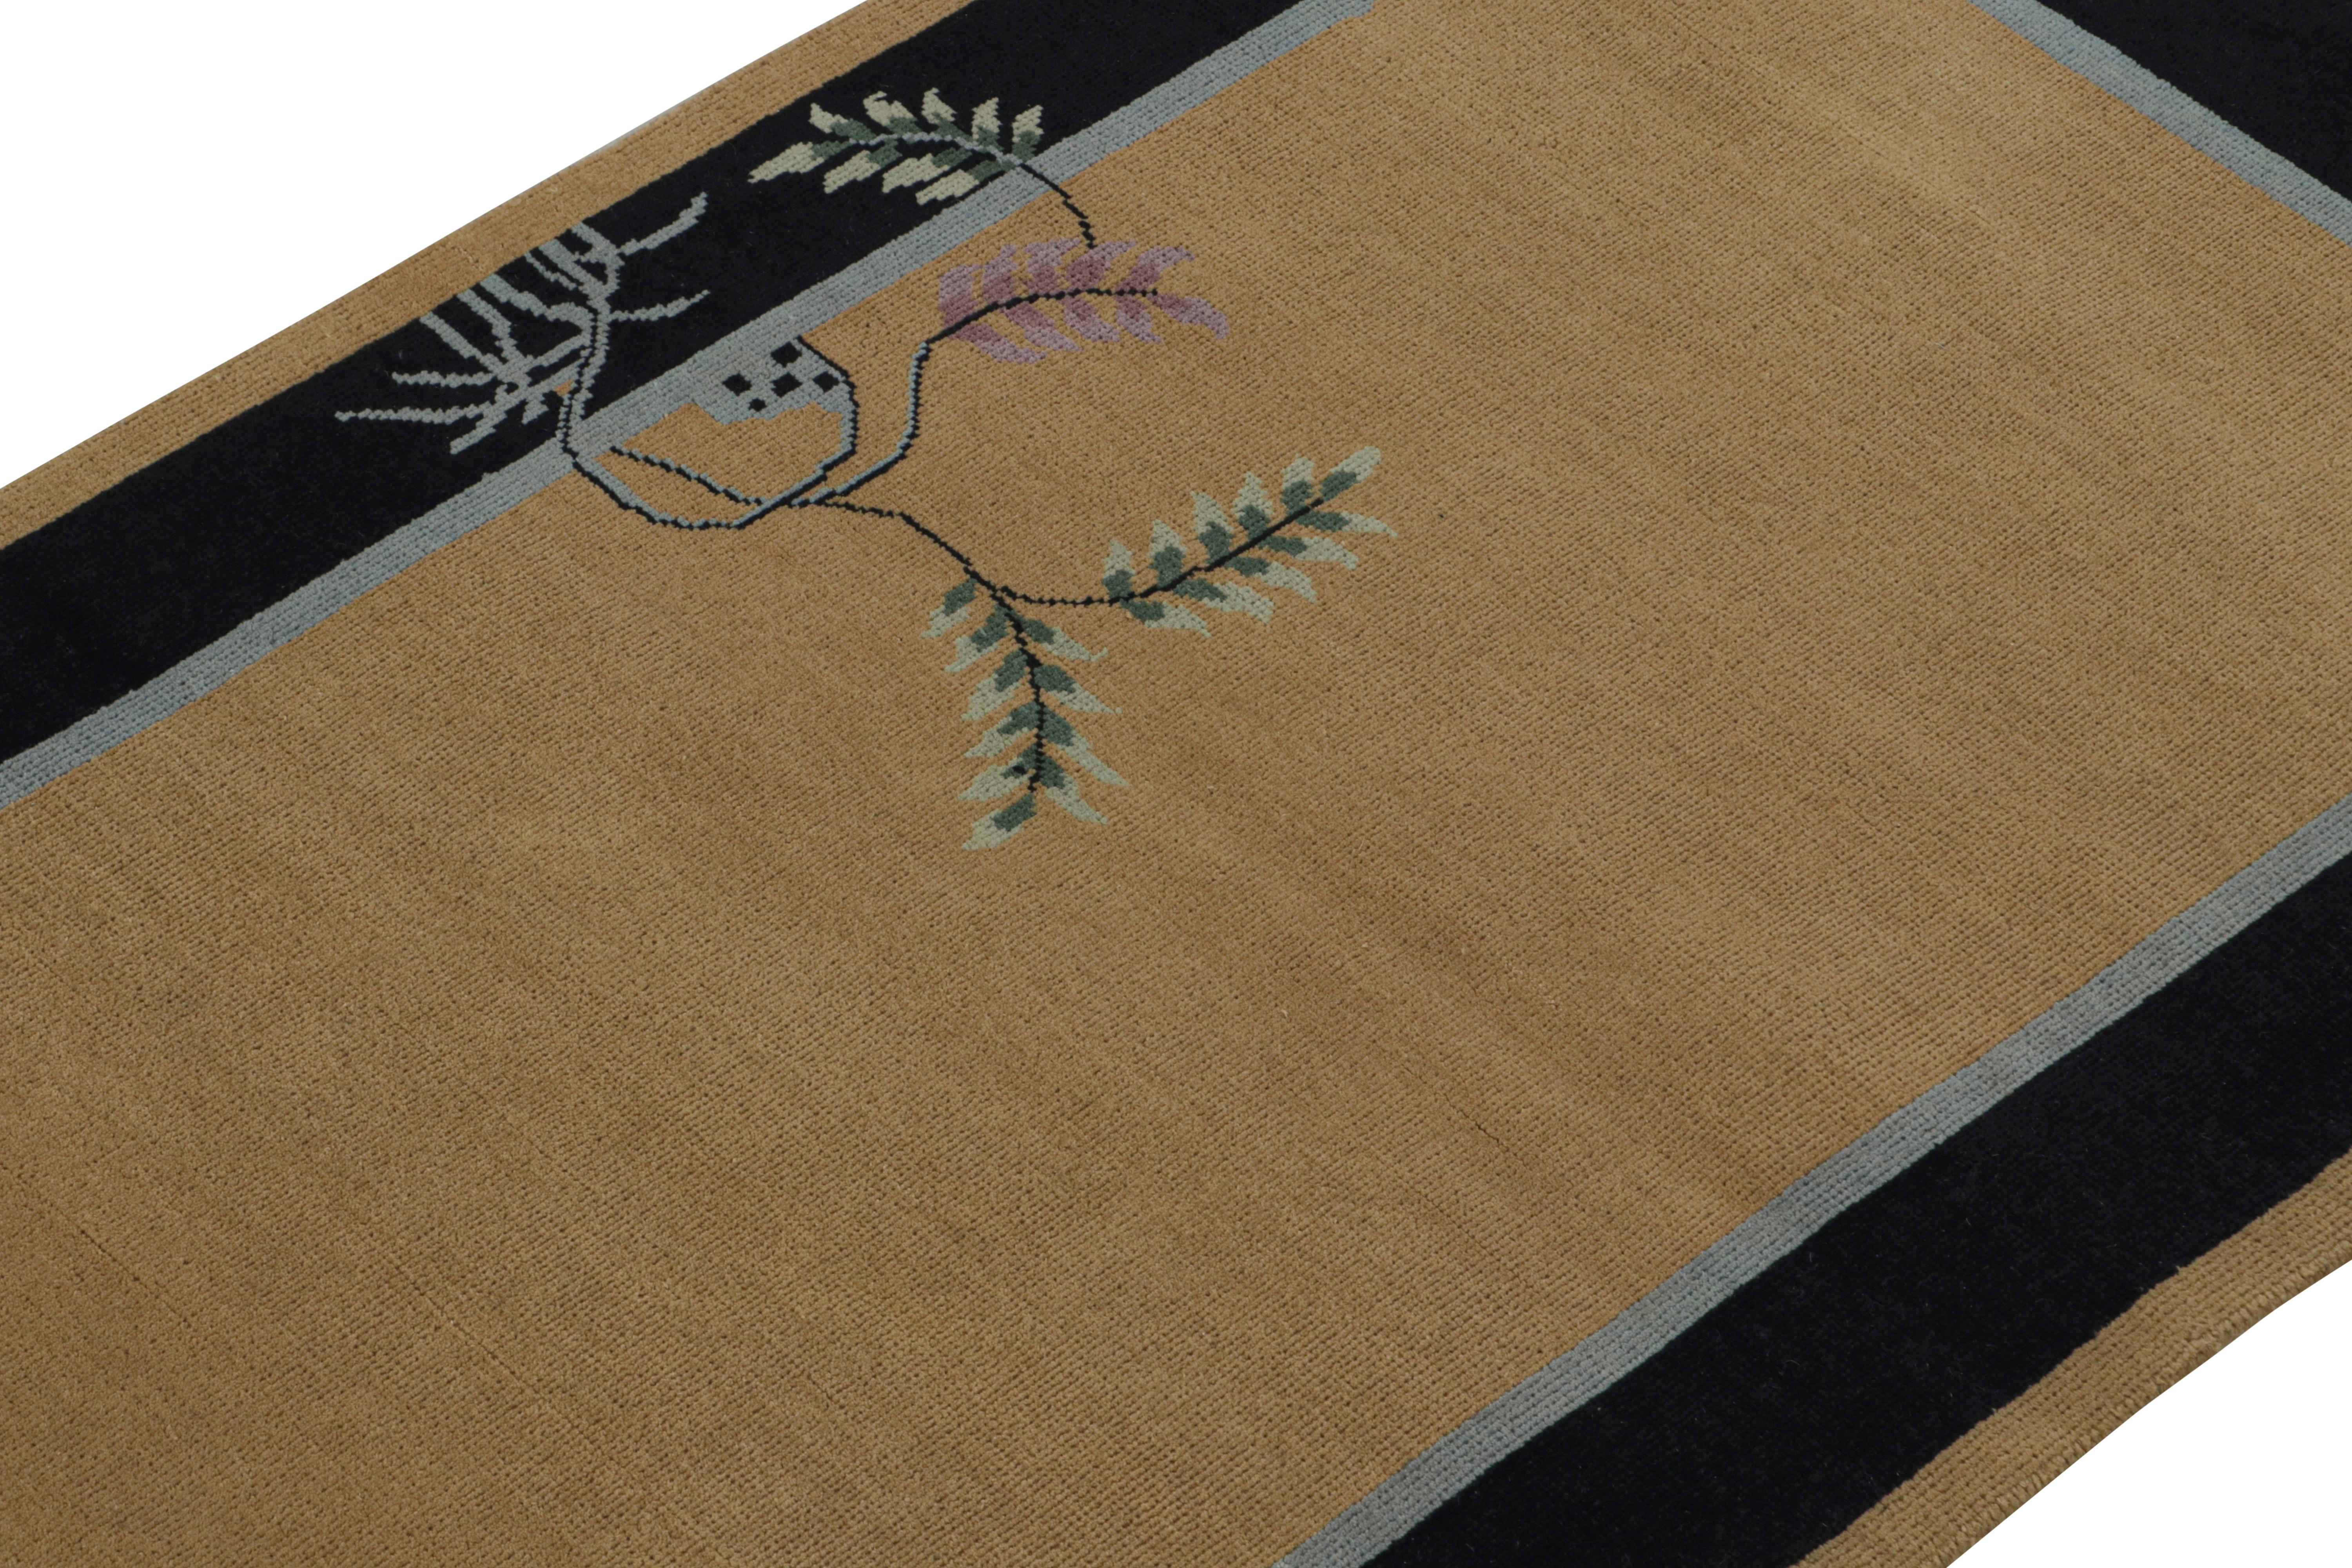 Ce tapis 3x5 est un nouvel ajout à la collection Art Deco de Rug & Kilim.  

Sur le Design : 

Noué à la main en laine, cette pièce contemporaine reprend le style des tapis chinois Art déco des années 1920. Son design minimal présente un seul motif